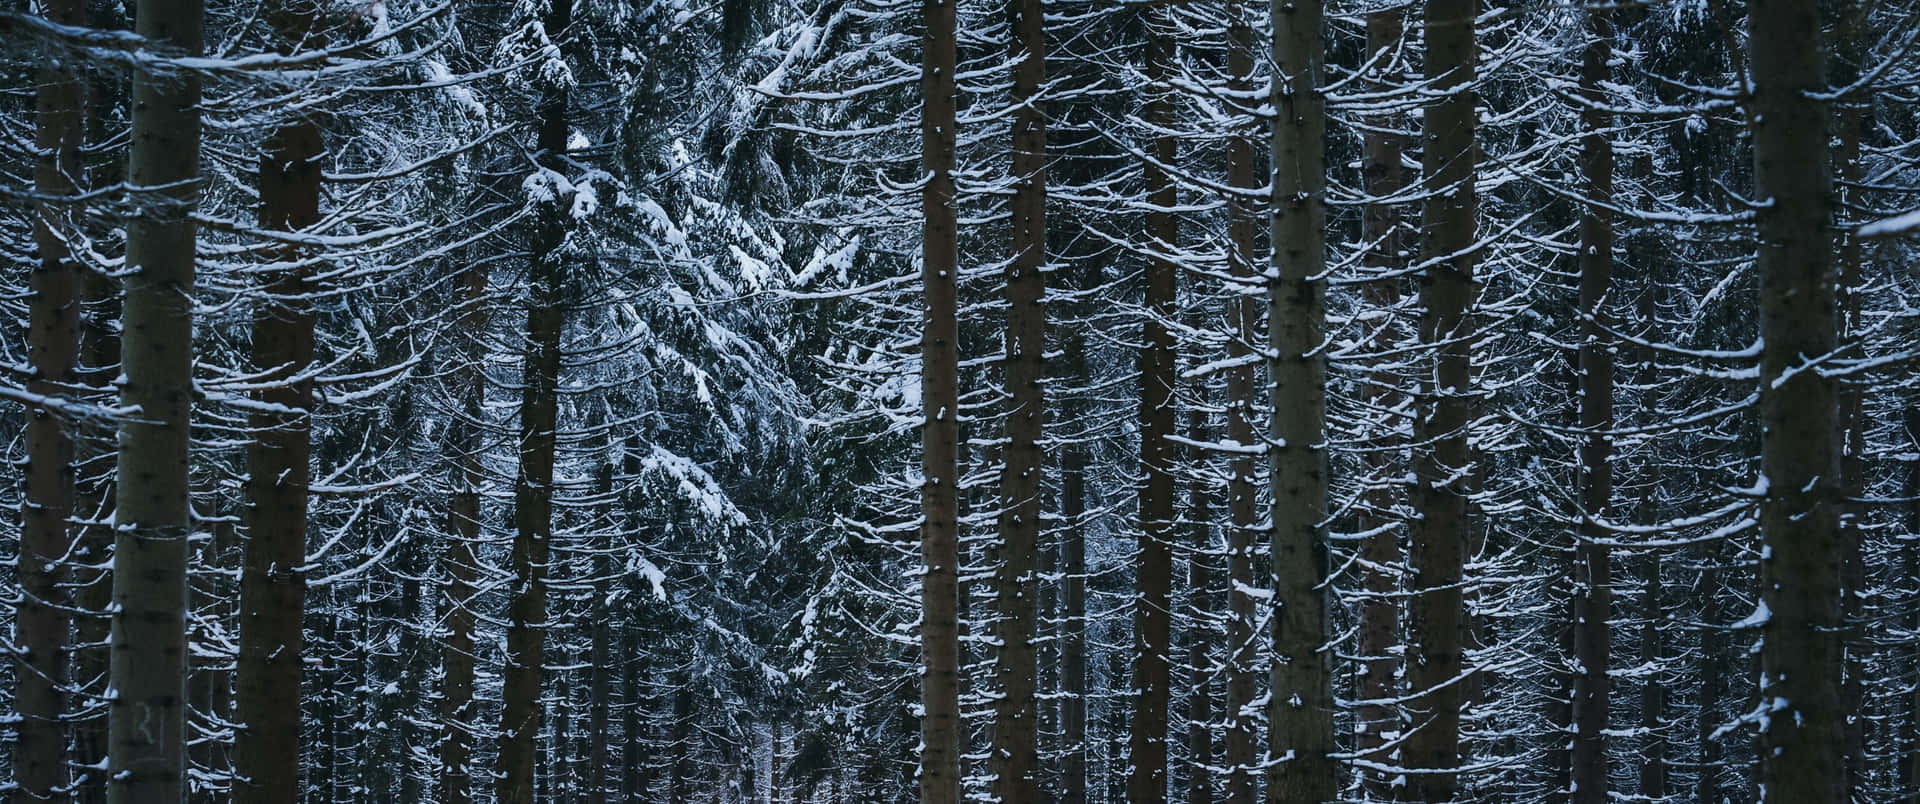 Frozen Winter Scenery in High Resolution Wallpaper